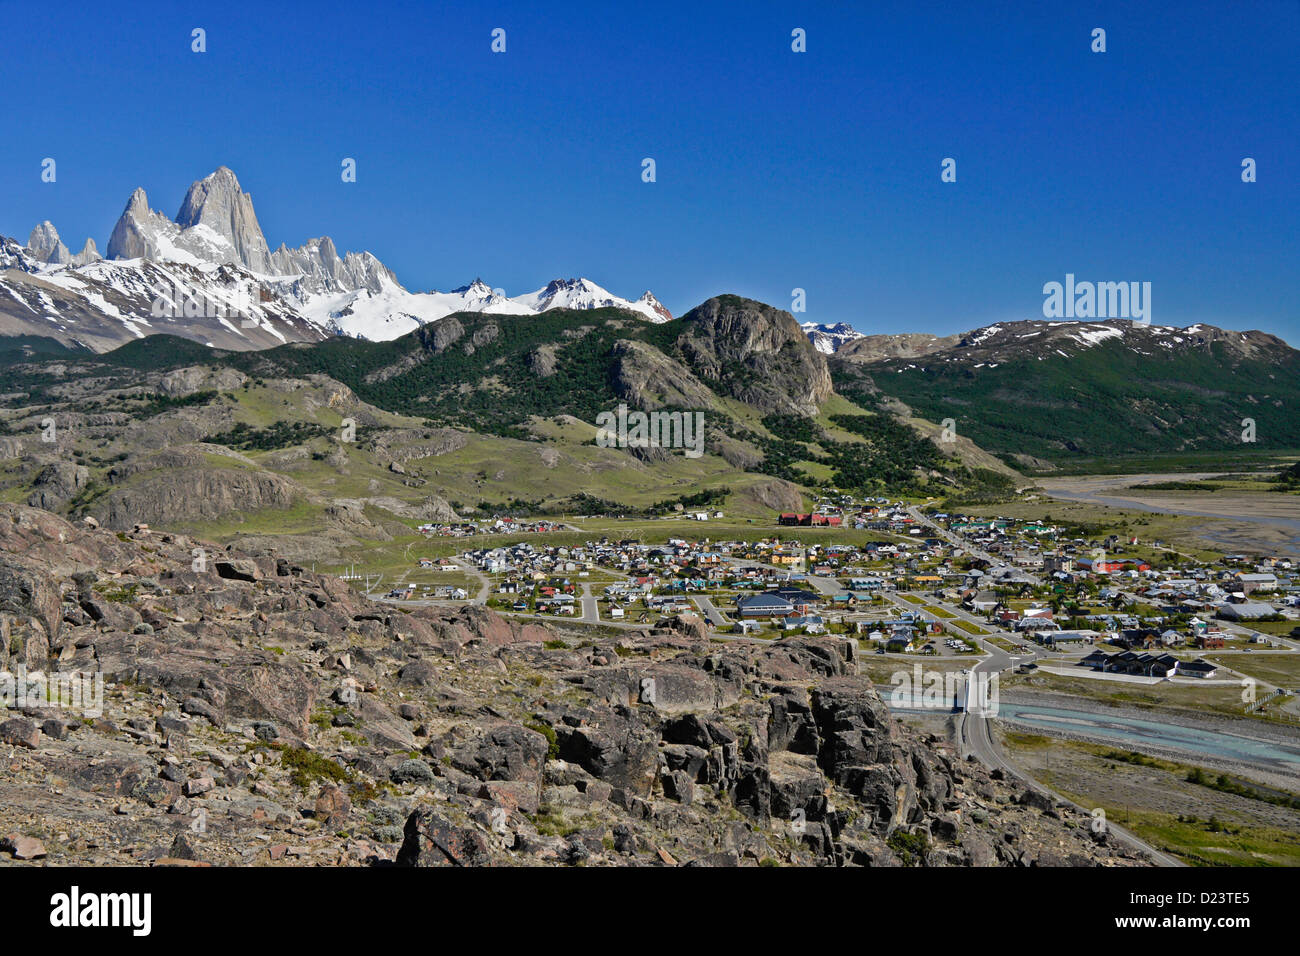 Gipfel des Mt. Fitzroy, El Chalten, Patagonien, Anden, Argentinien,  Südamerika Stockfotografie - Alamy